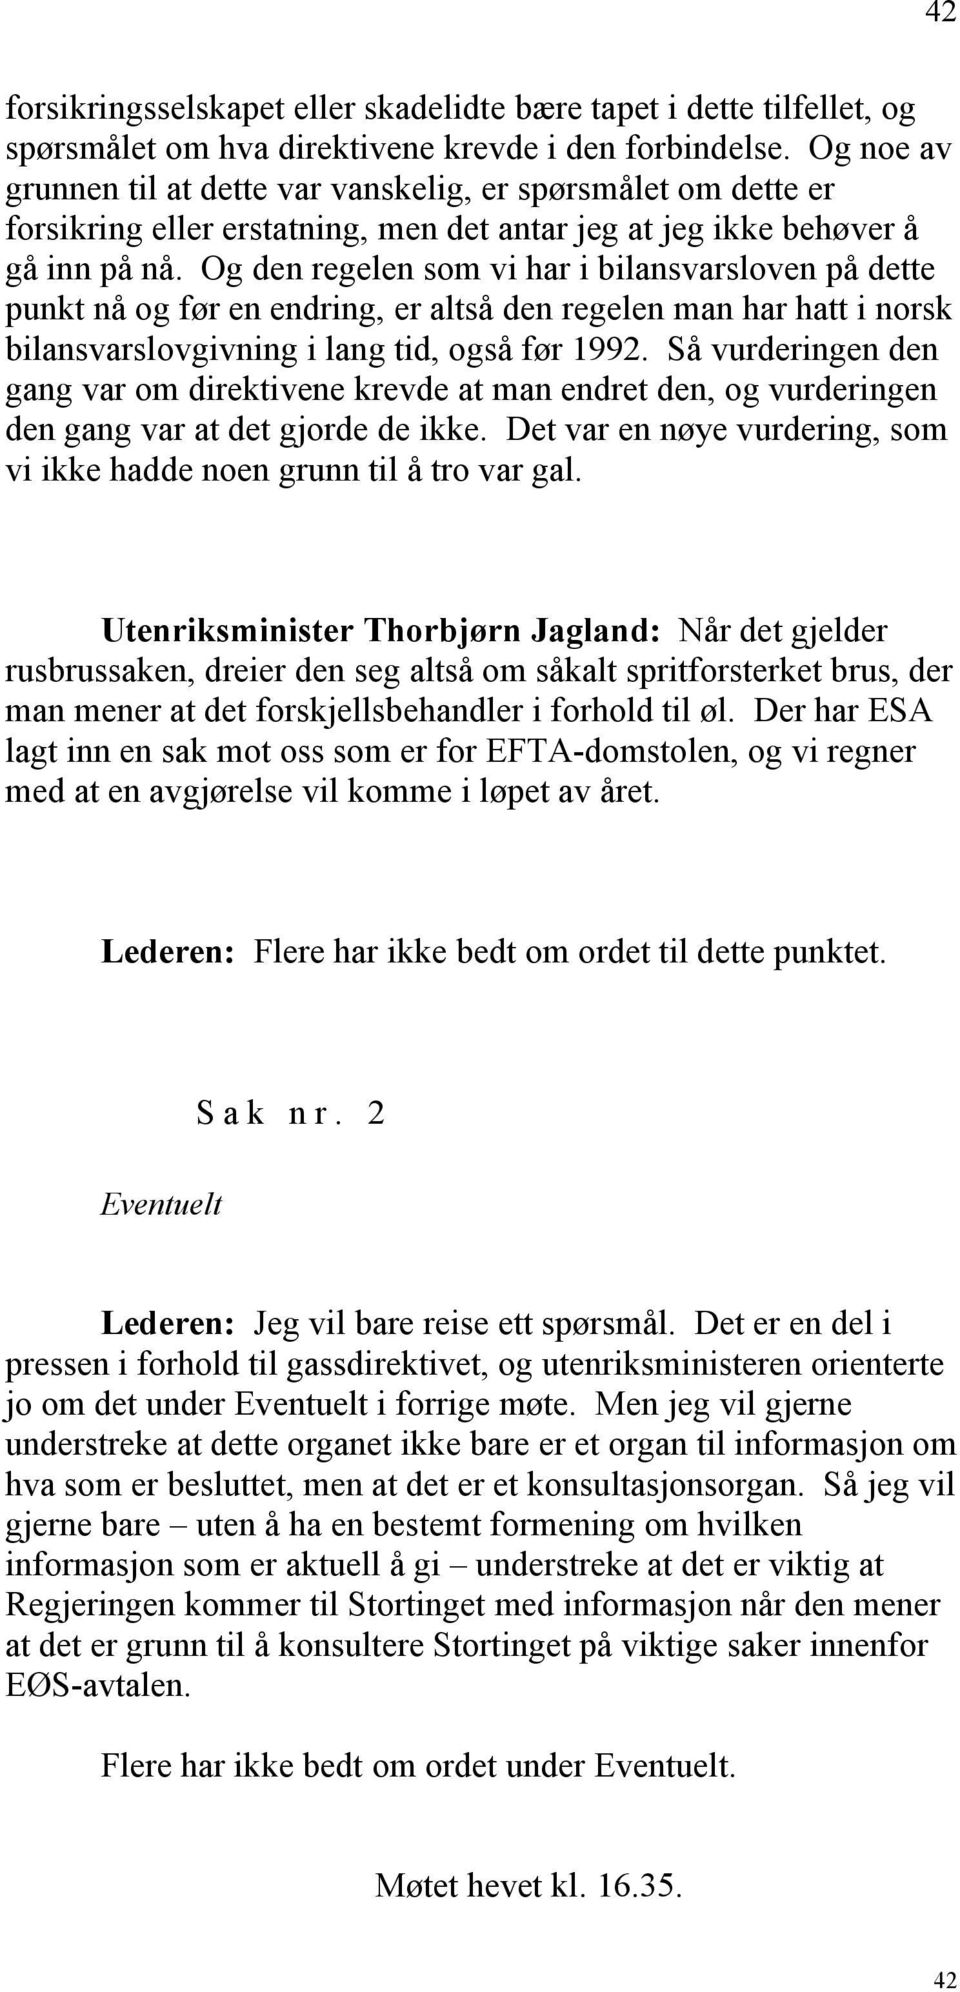 Og den regelen som vi har i bilansvarsloven på dette punkt nå og før en endring, er altså den regelen man har hatt i norsk bilansvarslovgivning i lang tid, også før 1992.